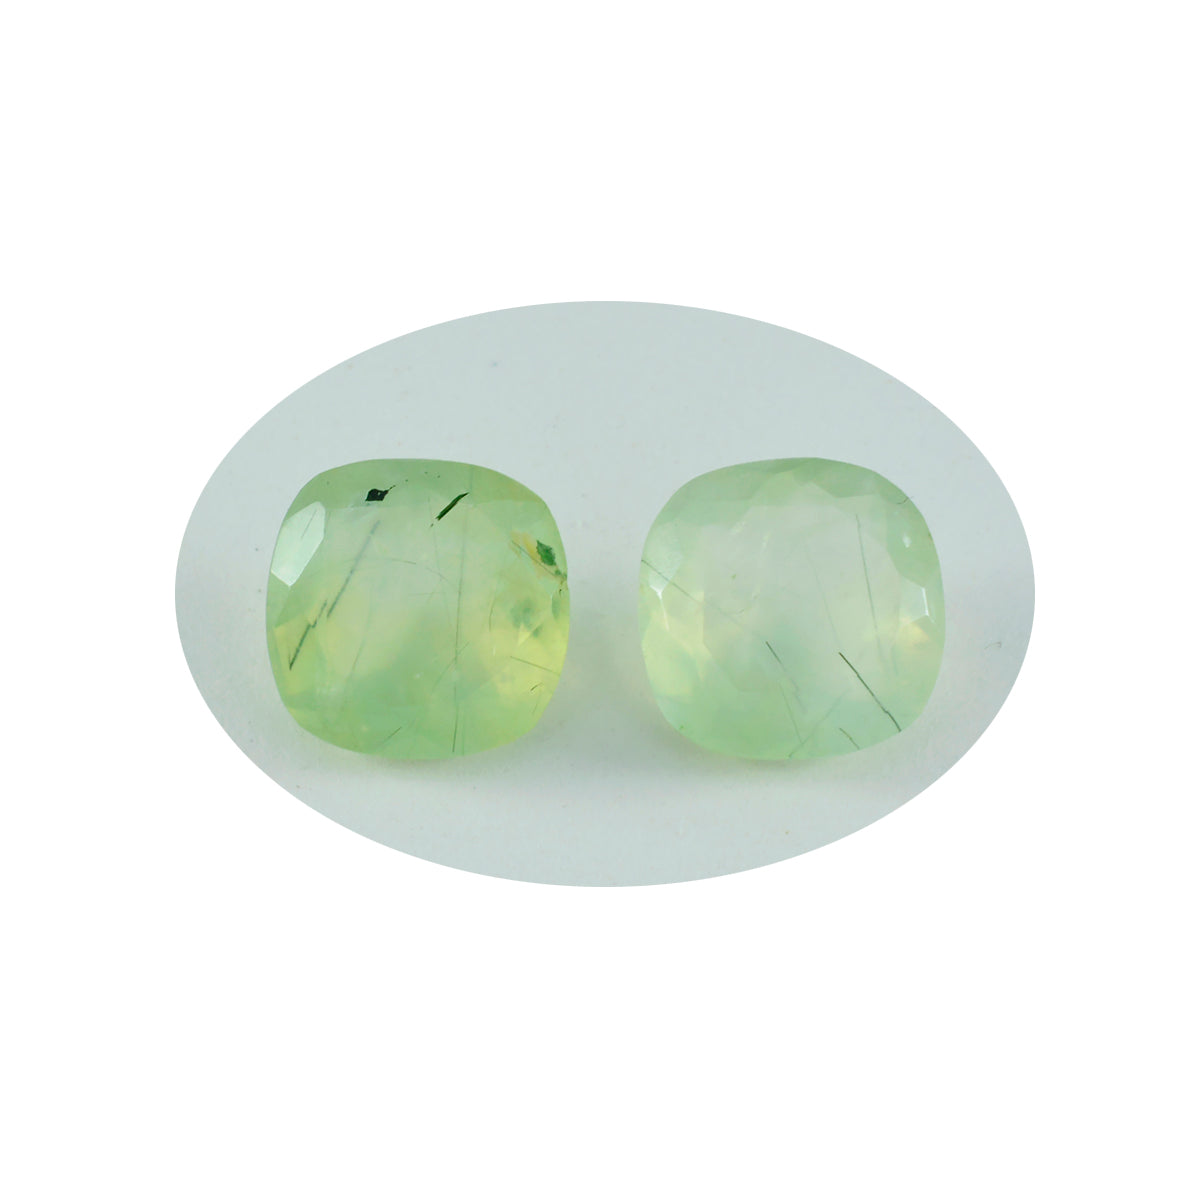 riyogems 1 pezzo di prehnite verde sfaccettata 11x11 mm a forma di cuscino, pietra sfusa di qualità attraente